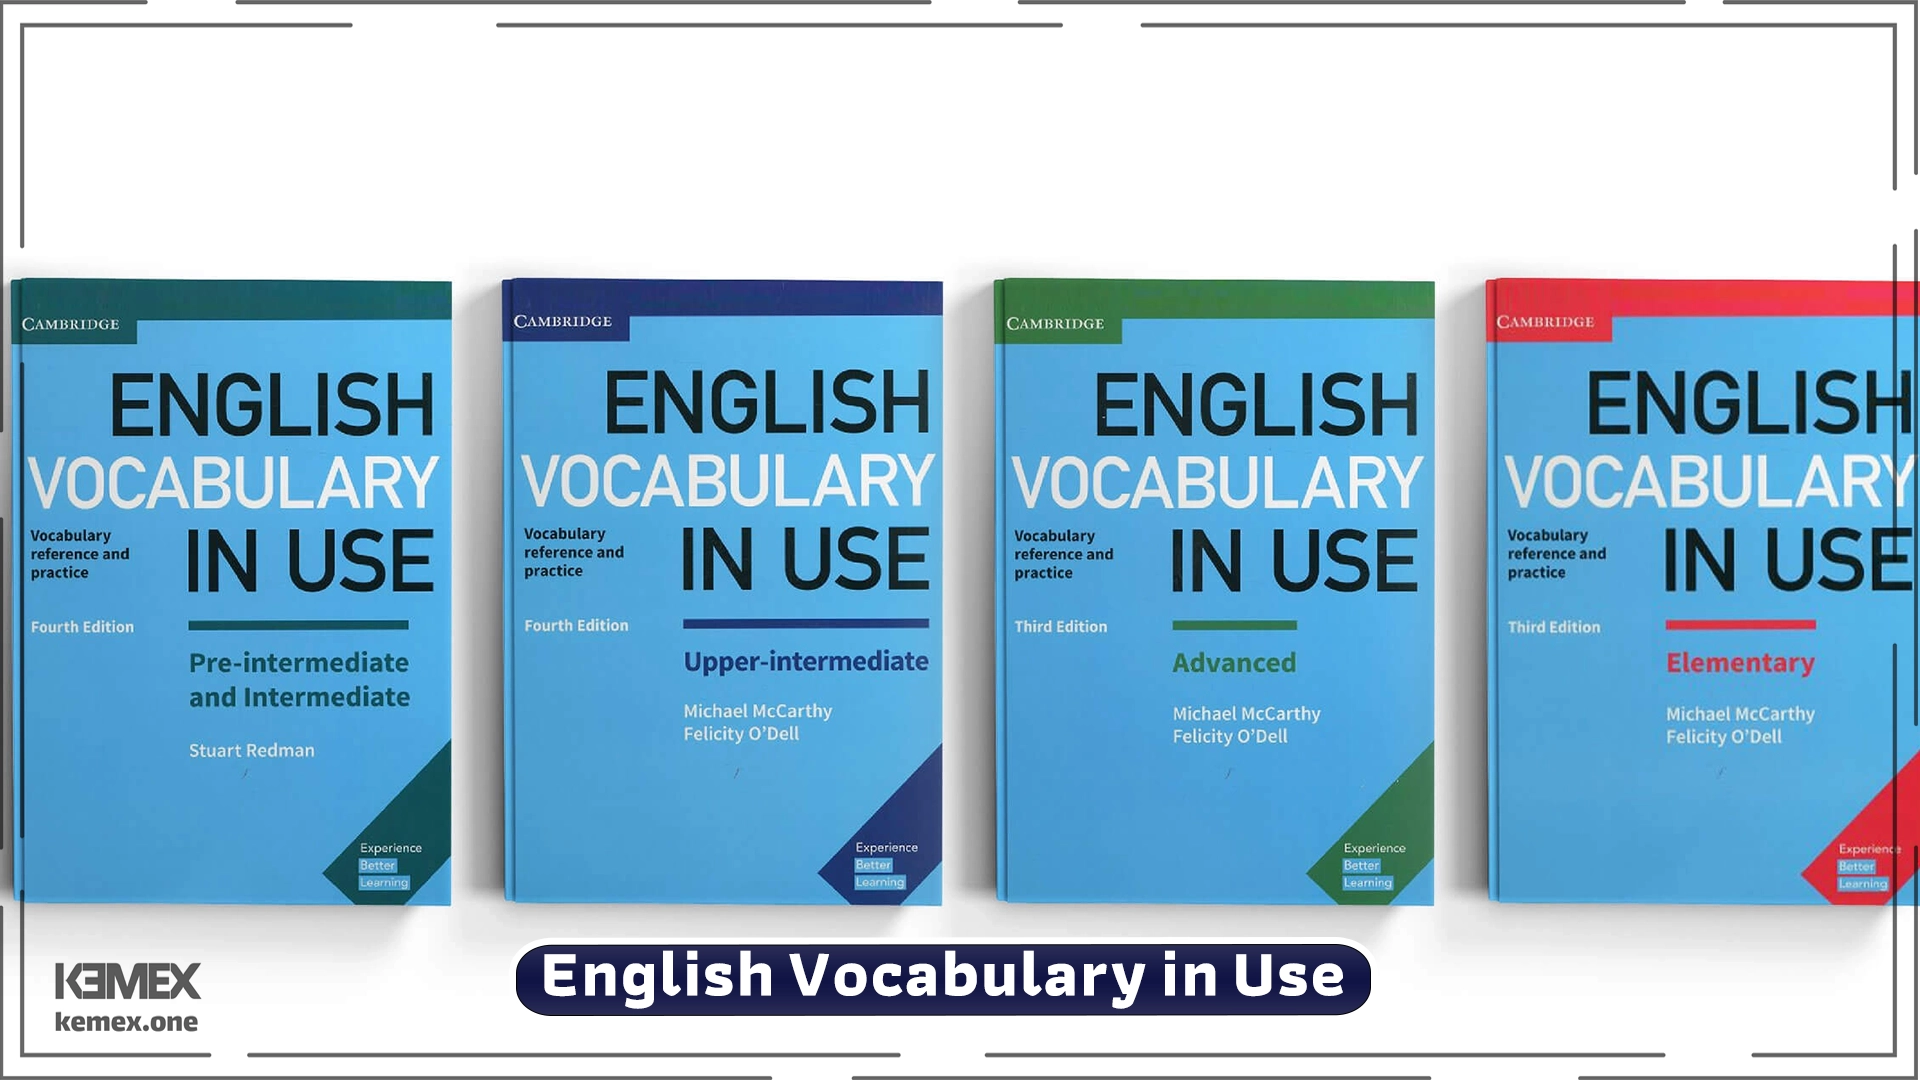 کتاب مفید برای یادگیری لغات انگلیسی